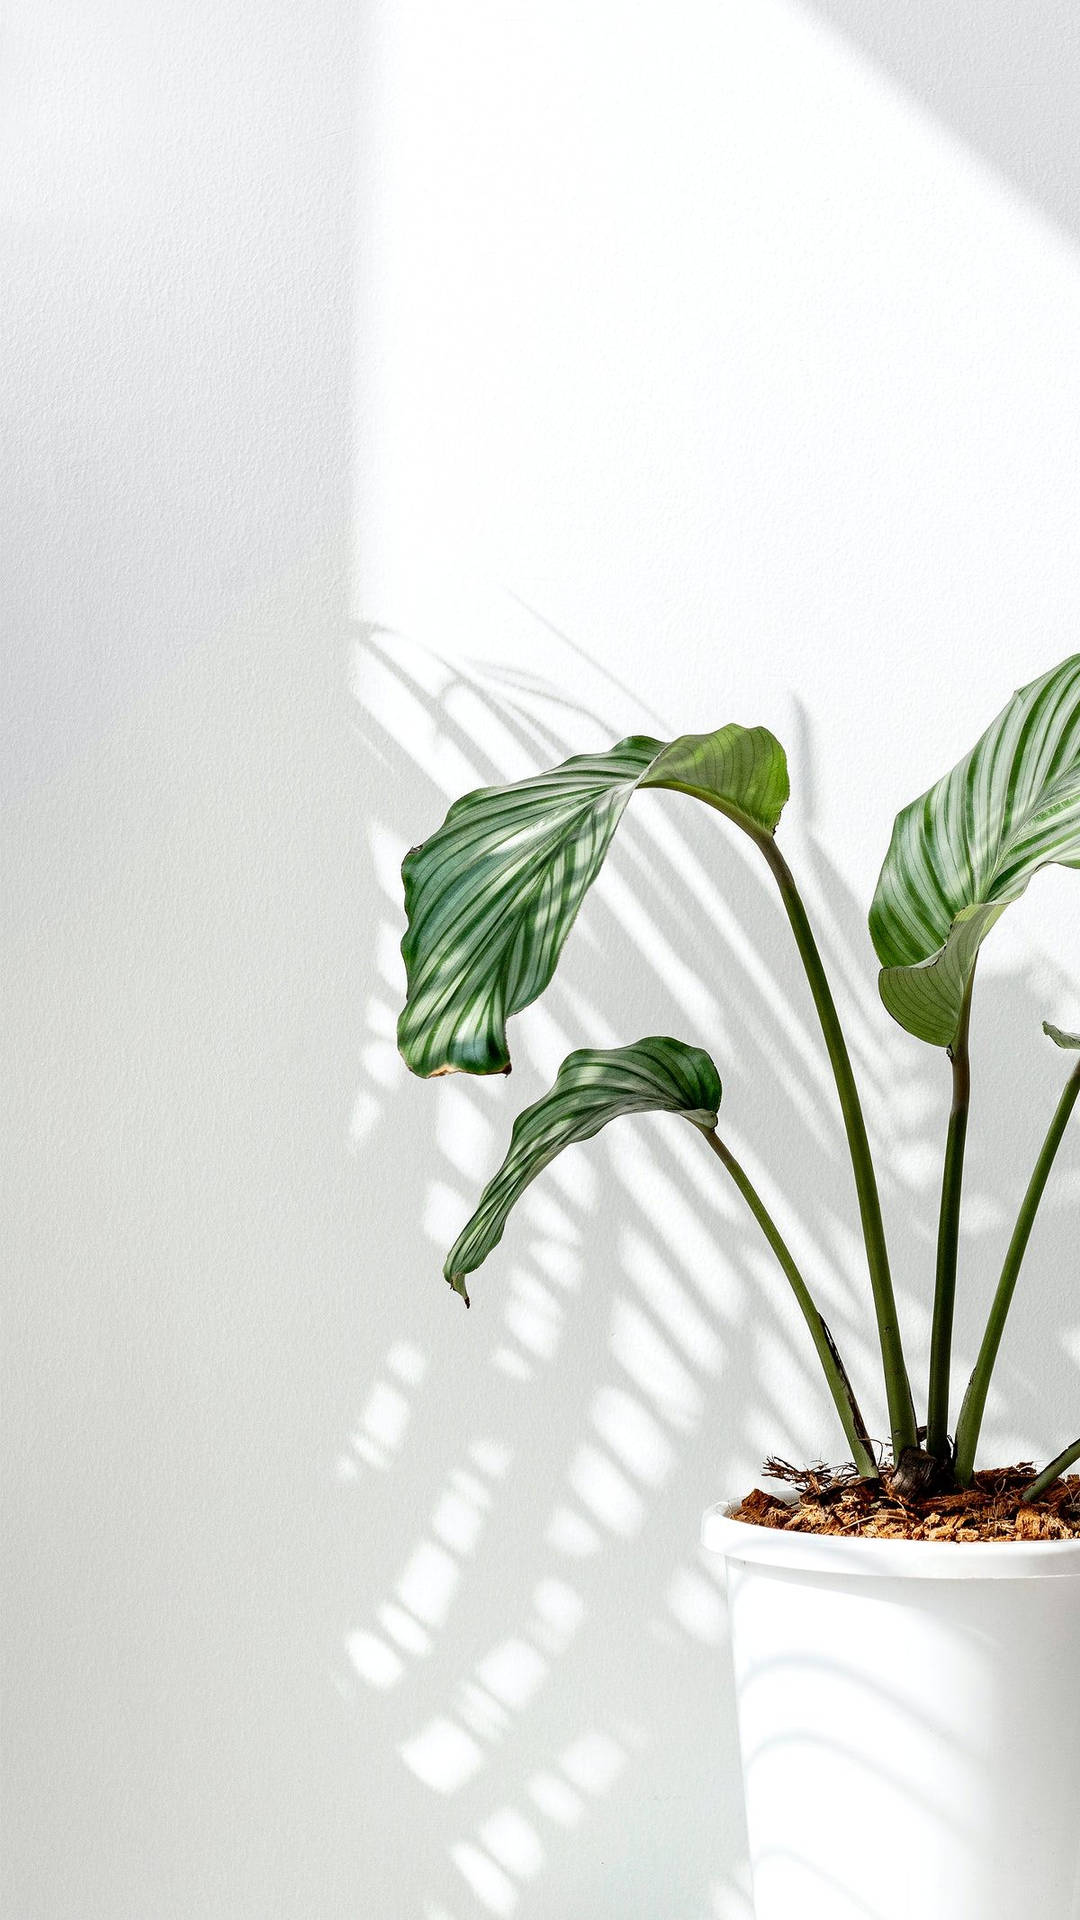 Orbifoliazimmerpflanze Im Natürlichen Licht Wallpaper